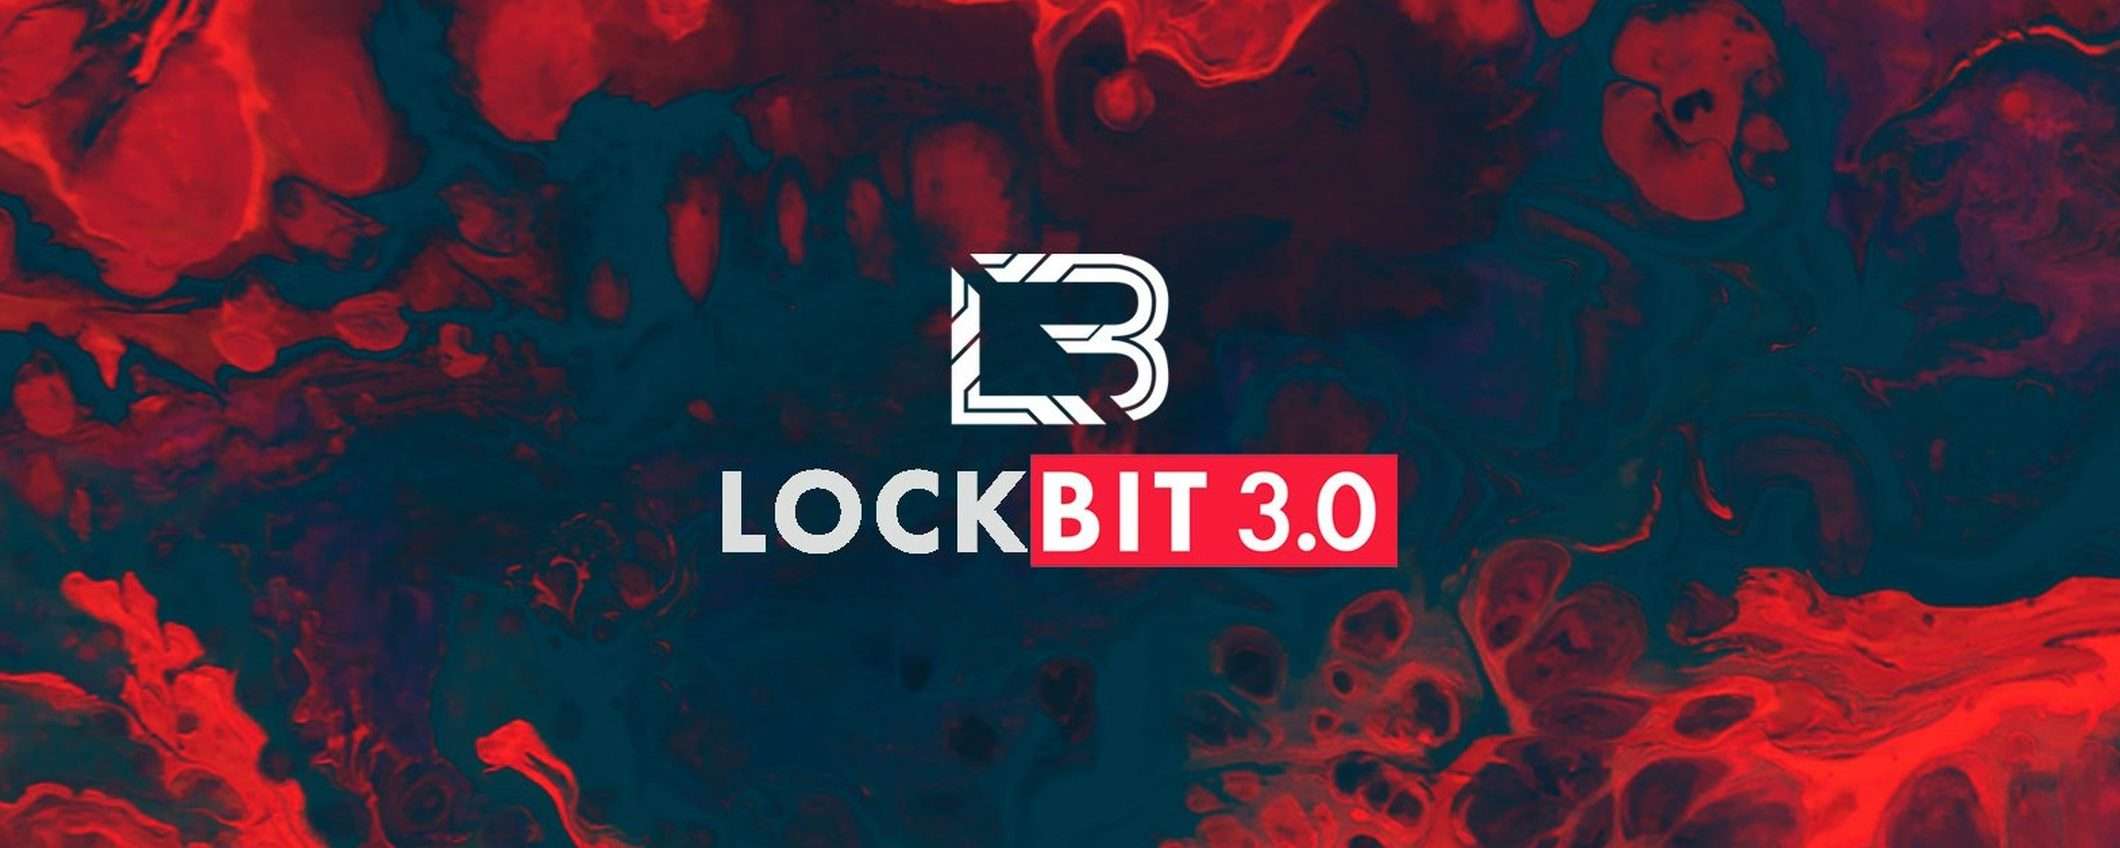 LockBit: attacco ransomware contro Westpole